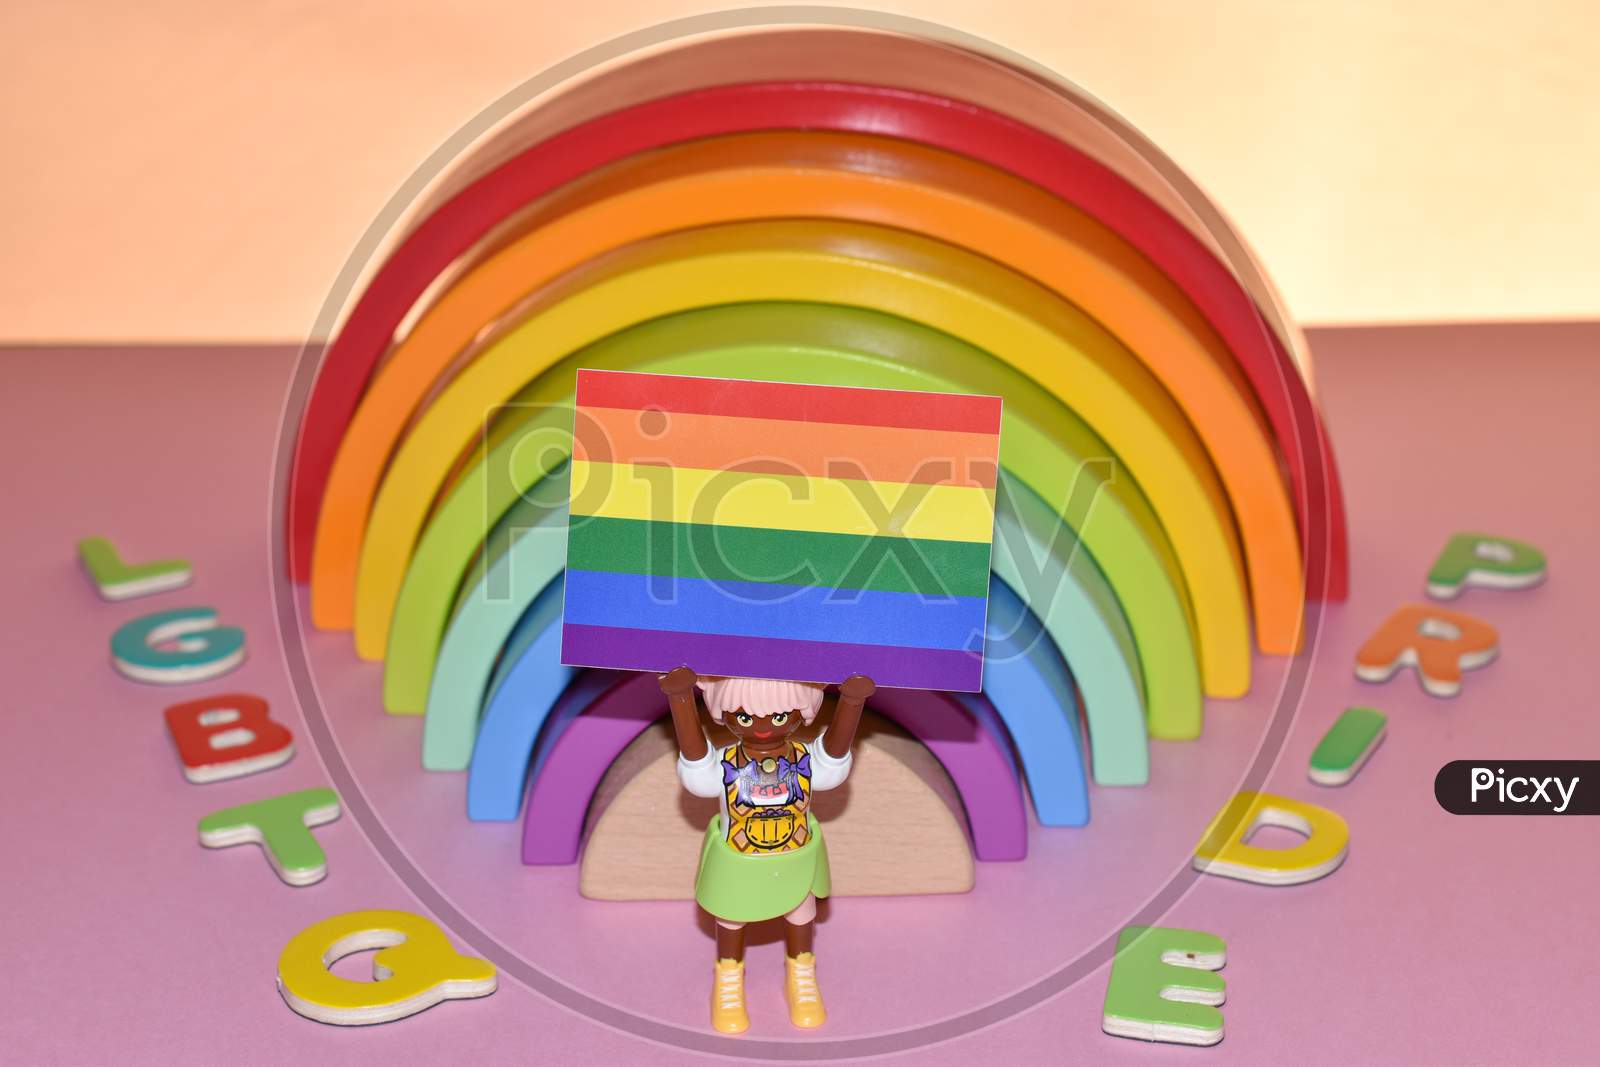 Vaduz, Liechtenstein, October 17, 2021 Human Toy With A Gender Flag In Front Of A Rainbow